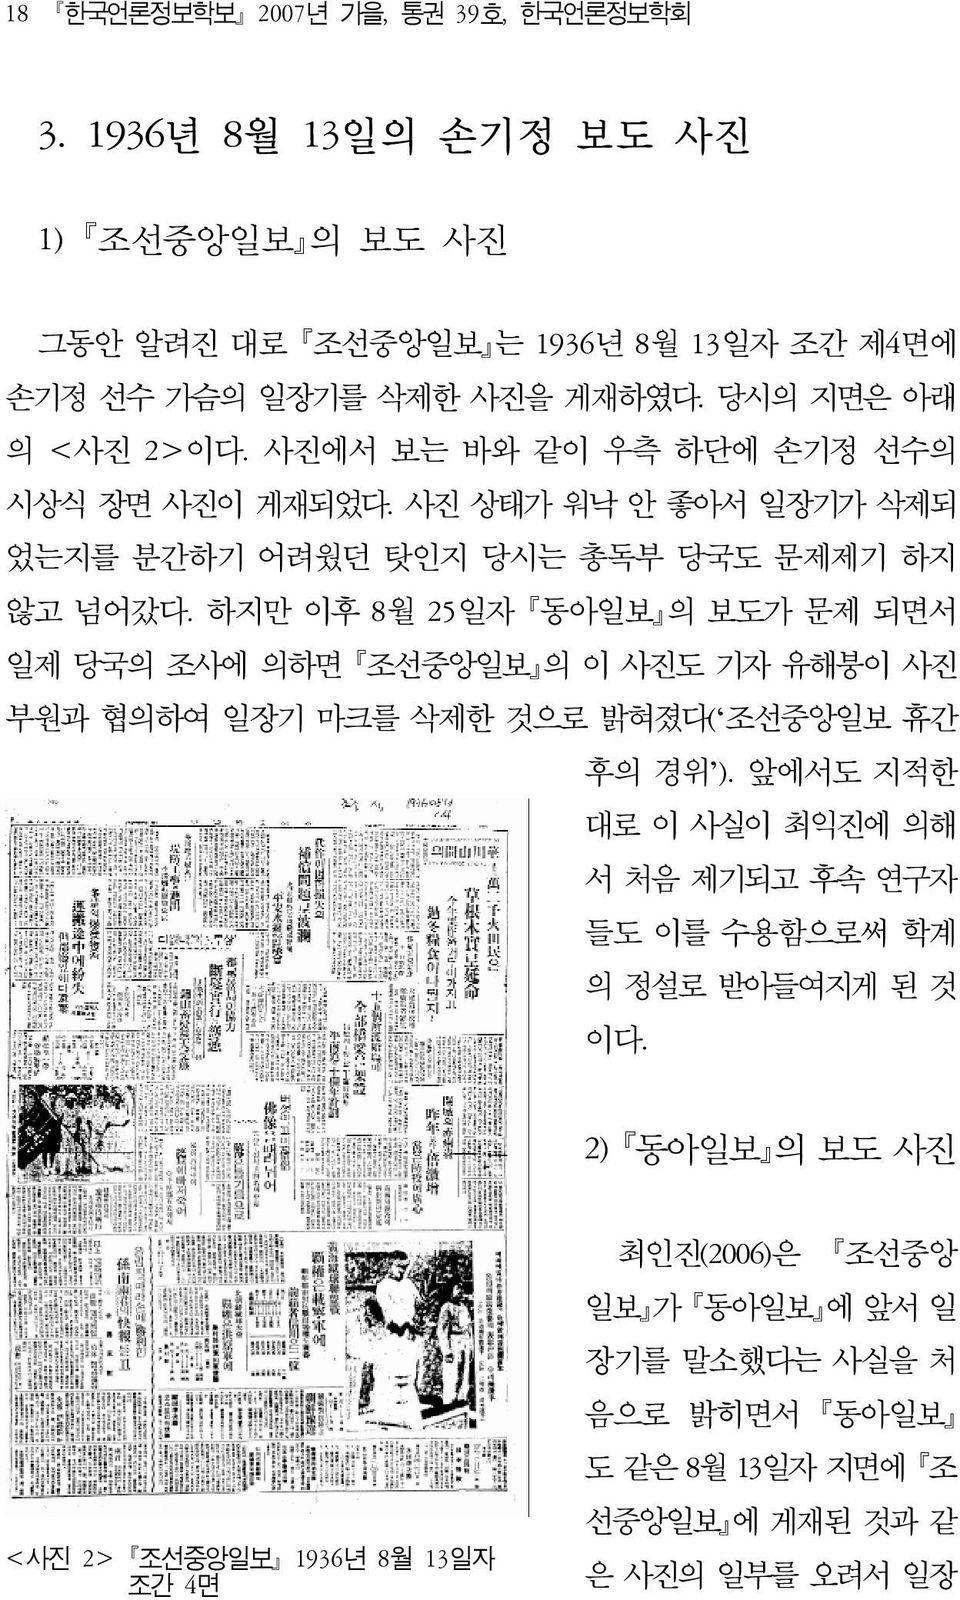 하지만 이후 8월 25일자 동아일보 의 보도가 문제 되면서 일제 당국의 조사에 의하면 조선중앙일보 의 이 사진도 기자 유해붕이 사진 부원과 협의하여 일장기 마크를 삭제한 것으로 밝혀졌다( 조선중앙일보 휴간 후의 경위 ).